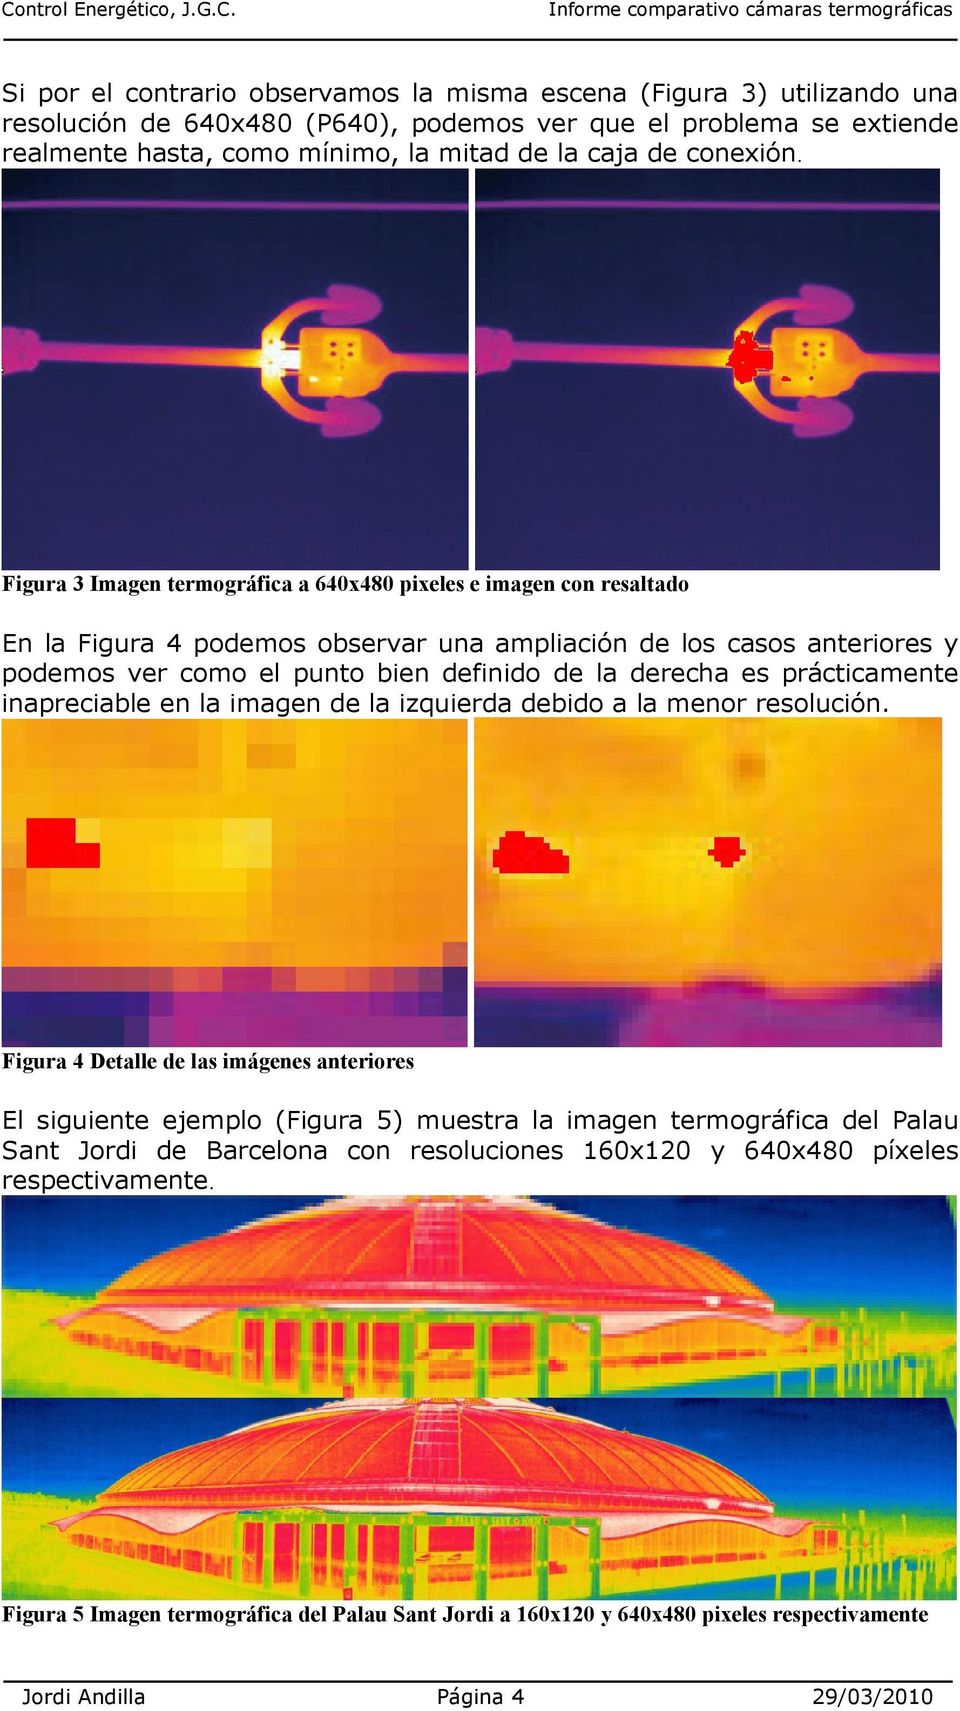 Figura 3 Imagen termográfica a 640x480 pixeles e imagen con resaltado En la Figura 4 podemos observar una ampliación de los casos anteriores y podemos ver como el punto bien definido de la derecha es